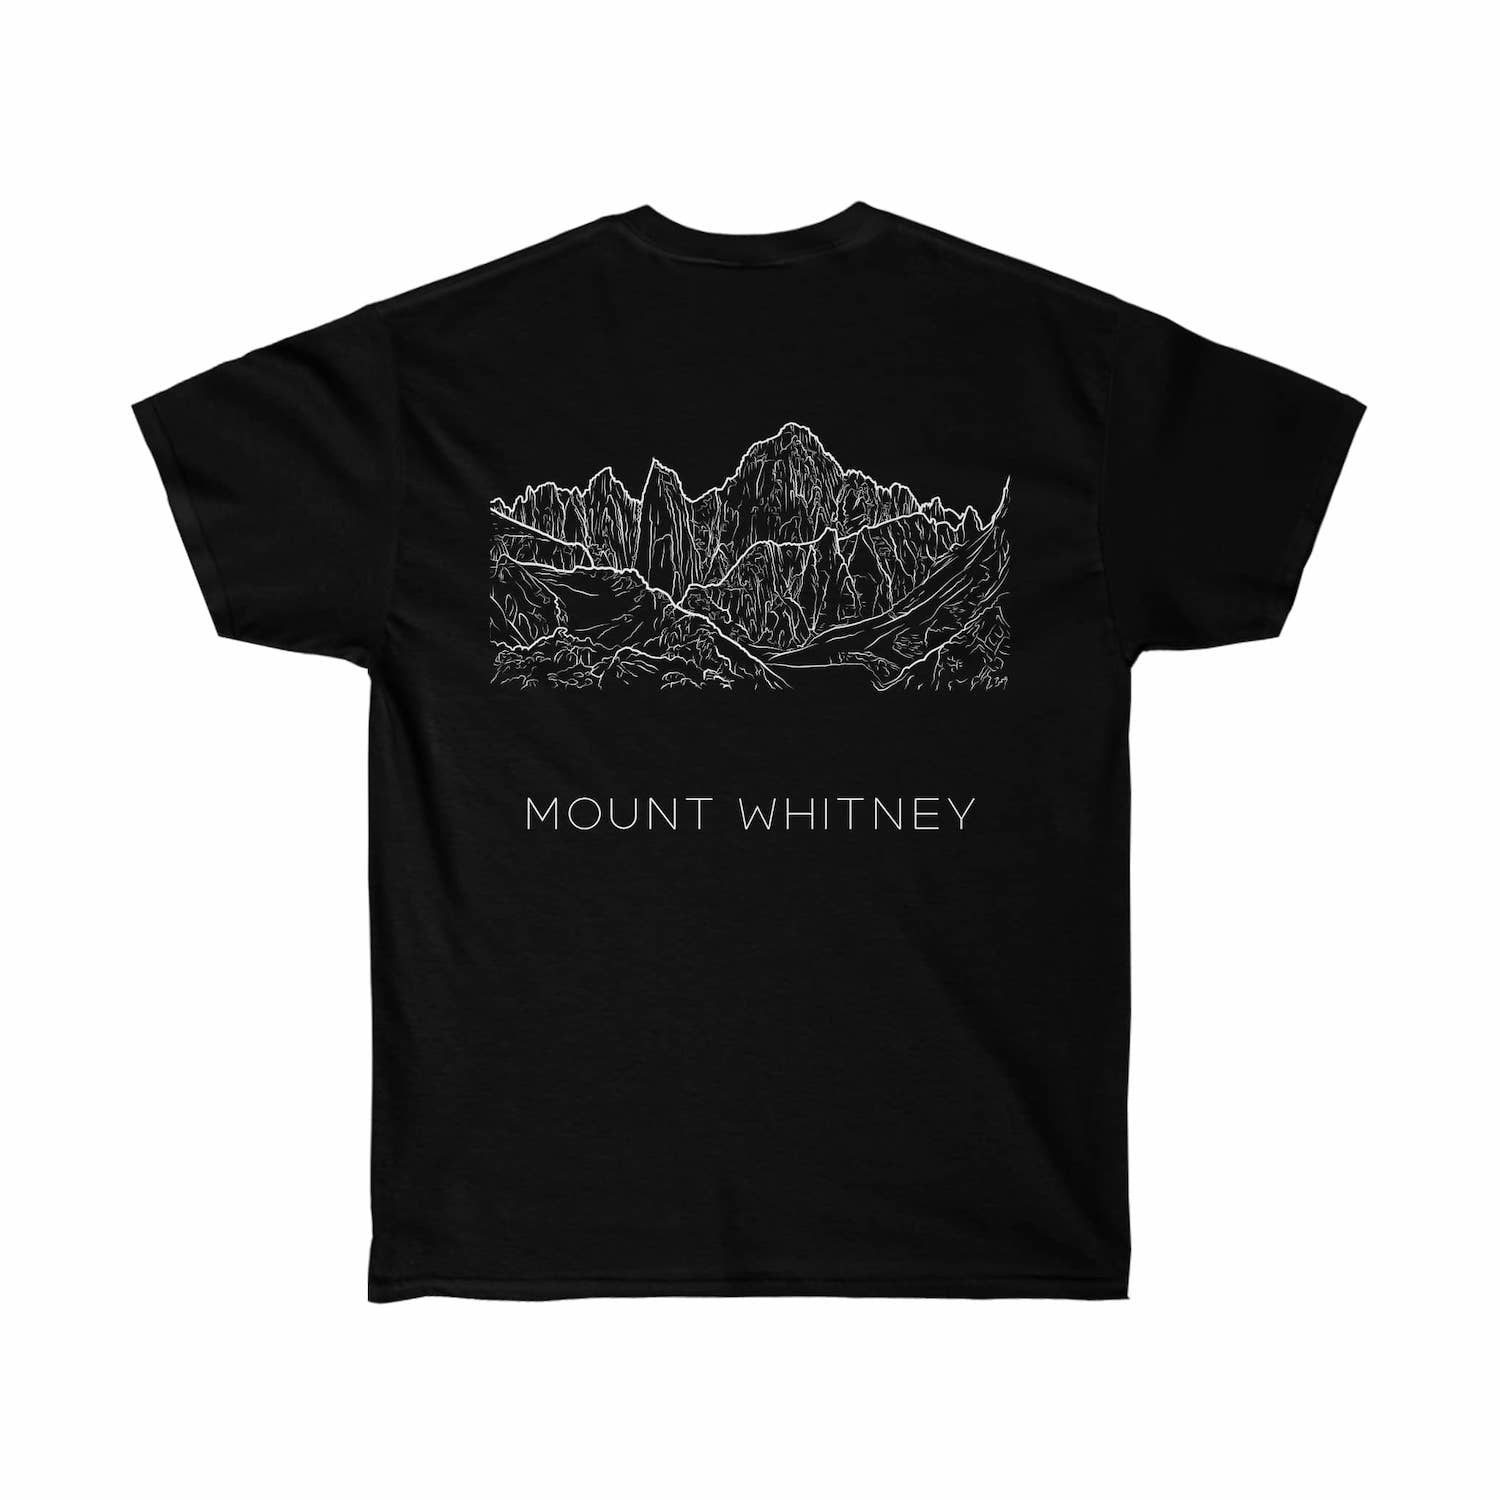 Mount Whitney B/W